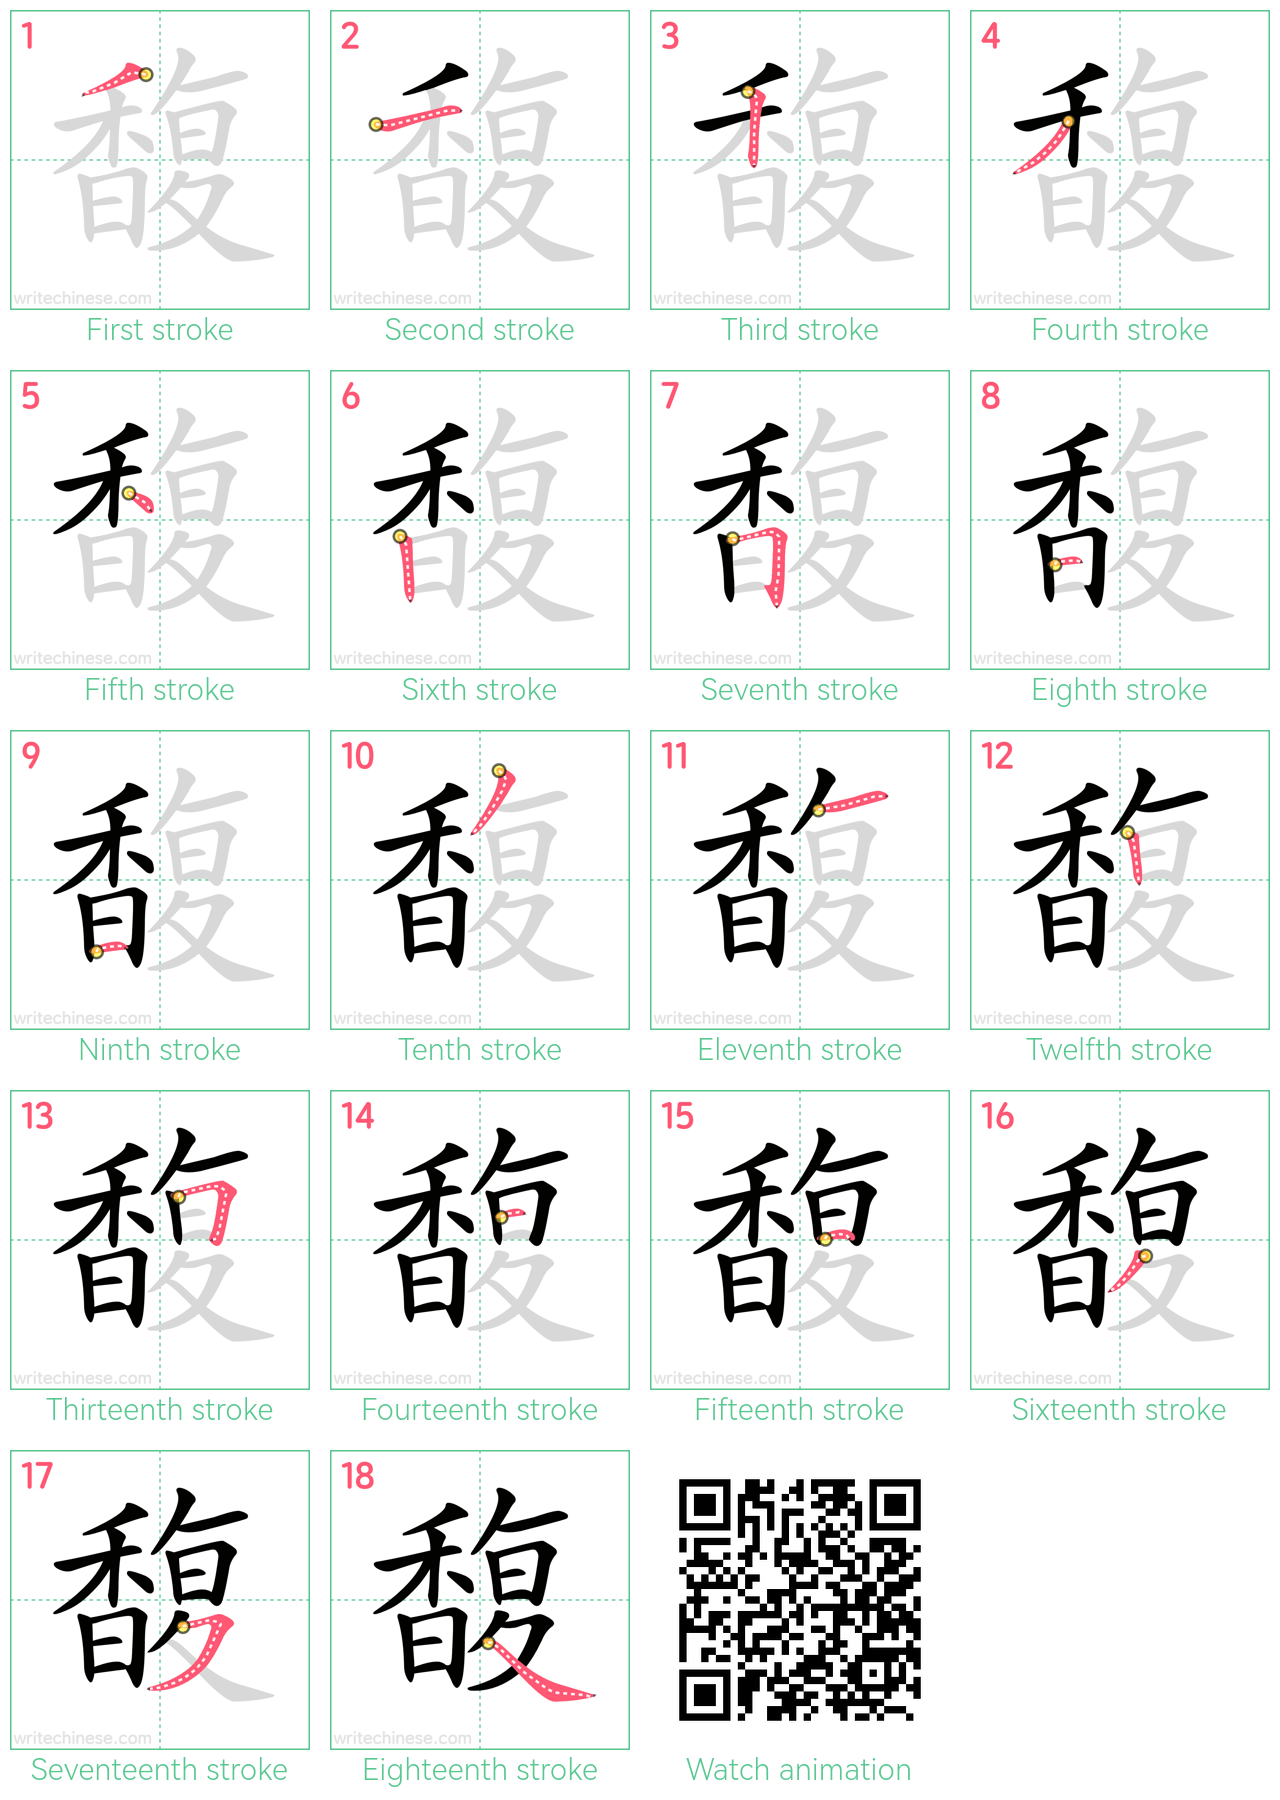 馥 step-by-step stroke order diagrams